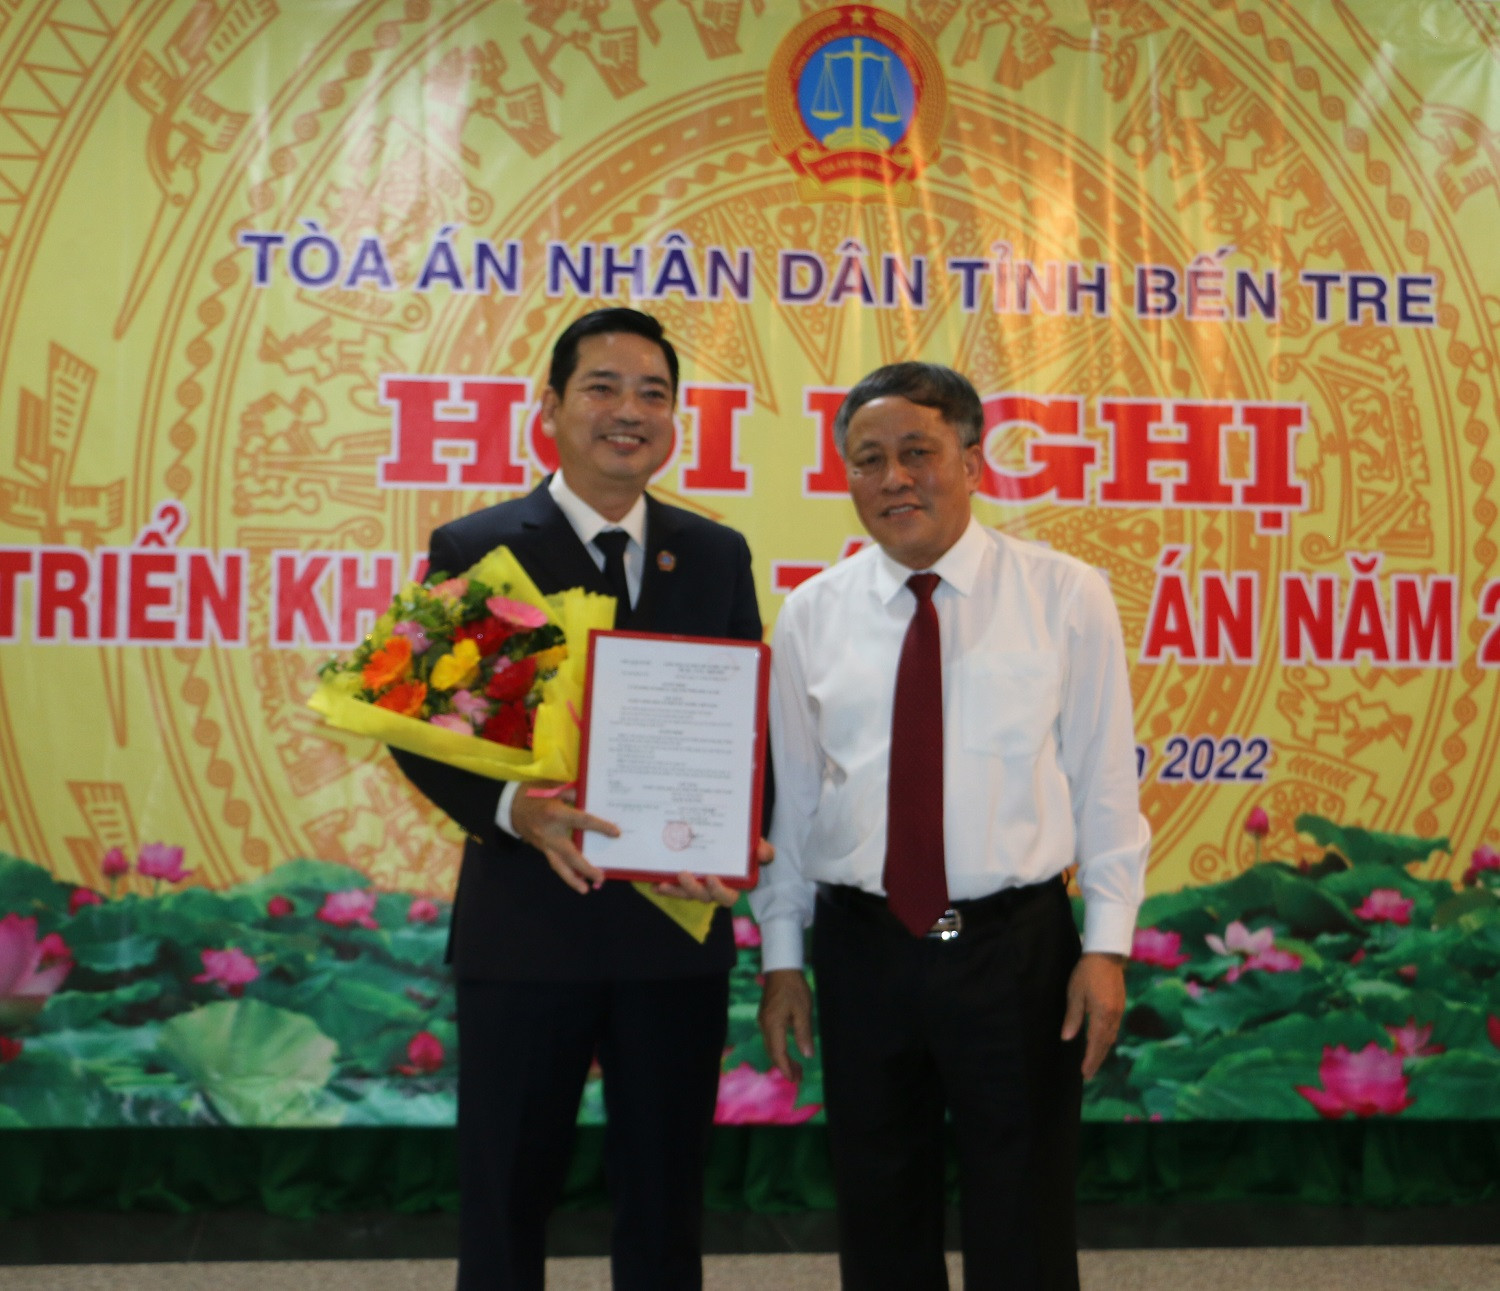 Thẩm phán TANDTC Nguyễn Văn Thuân trao quyết định bổ nhiệm thẩm phán cao cấp